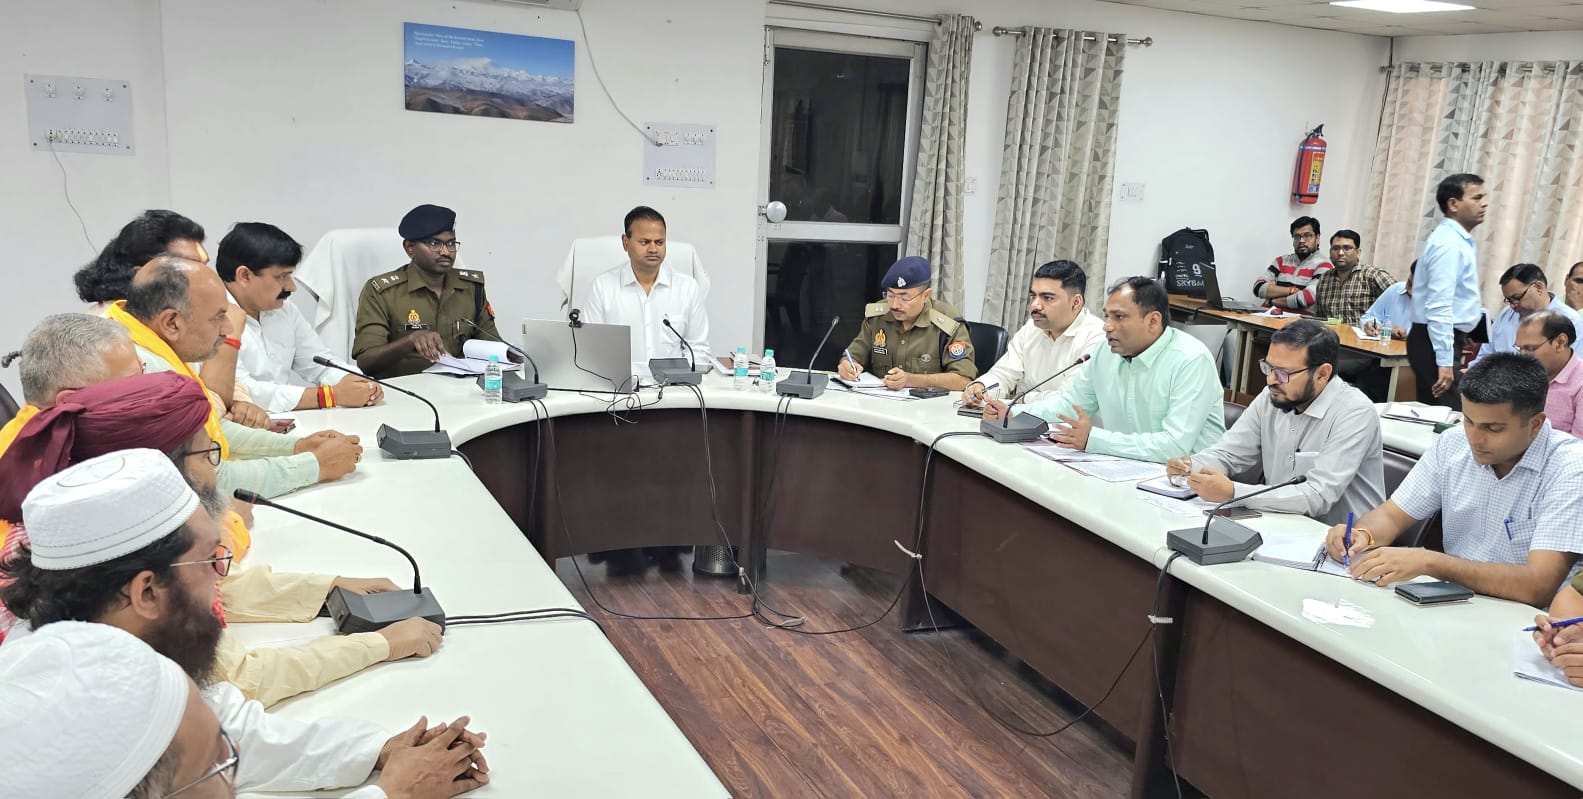 जिलाधिकारी एवं वरिष्ठ पुलिस अधीक्षक की अध्यक्षता में आयोजित हुई समस्त धर्म गुरुओं के साथ शांति समिति की बैठक | New India Times